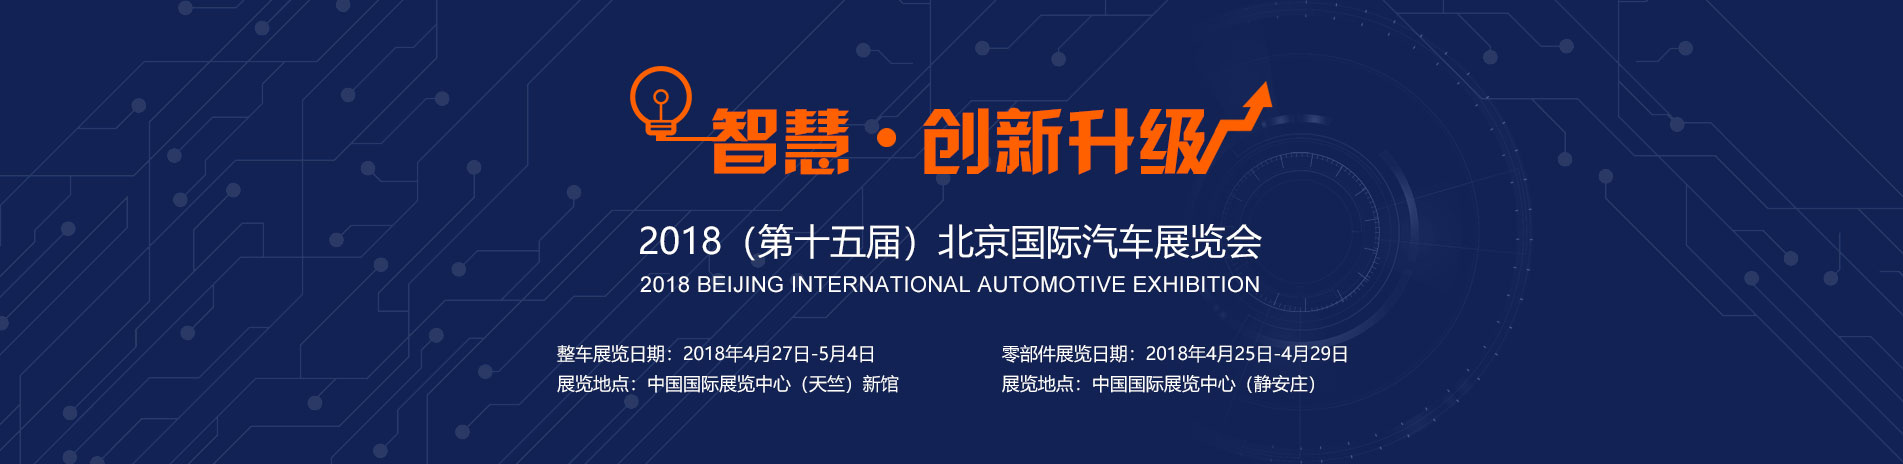 智慧 · 创新升级 2018北京国际汽车展览会